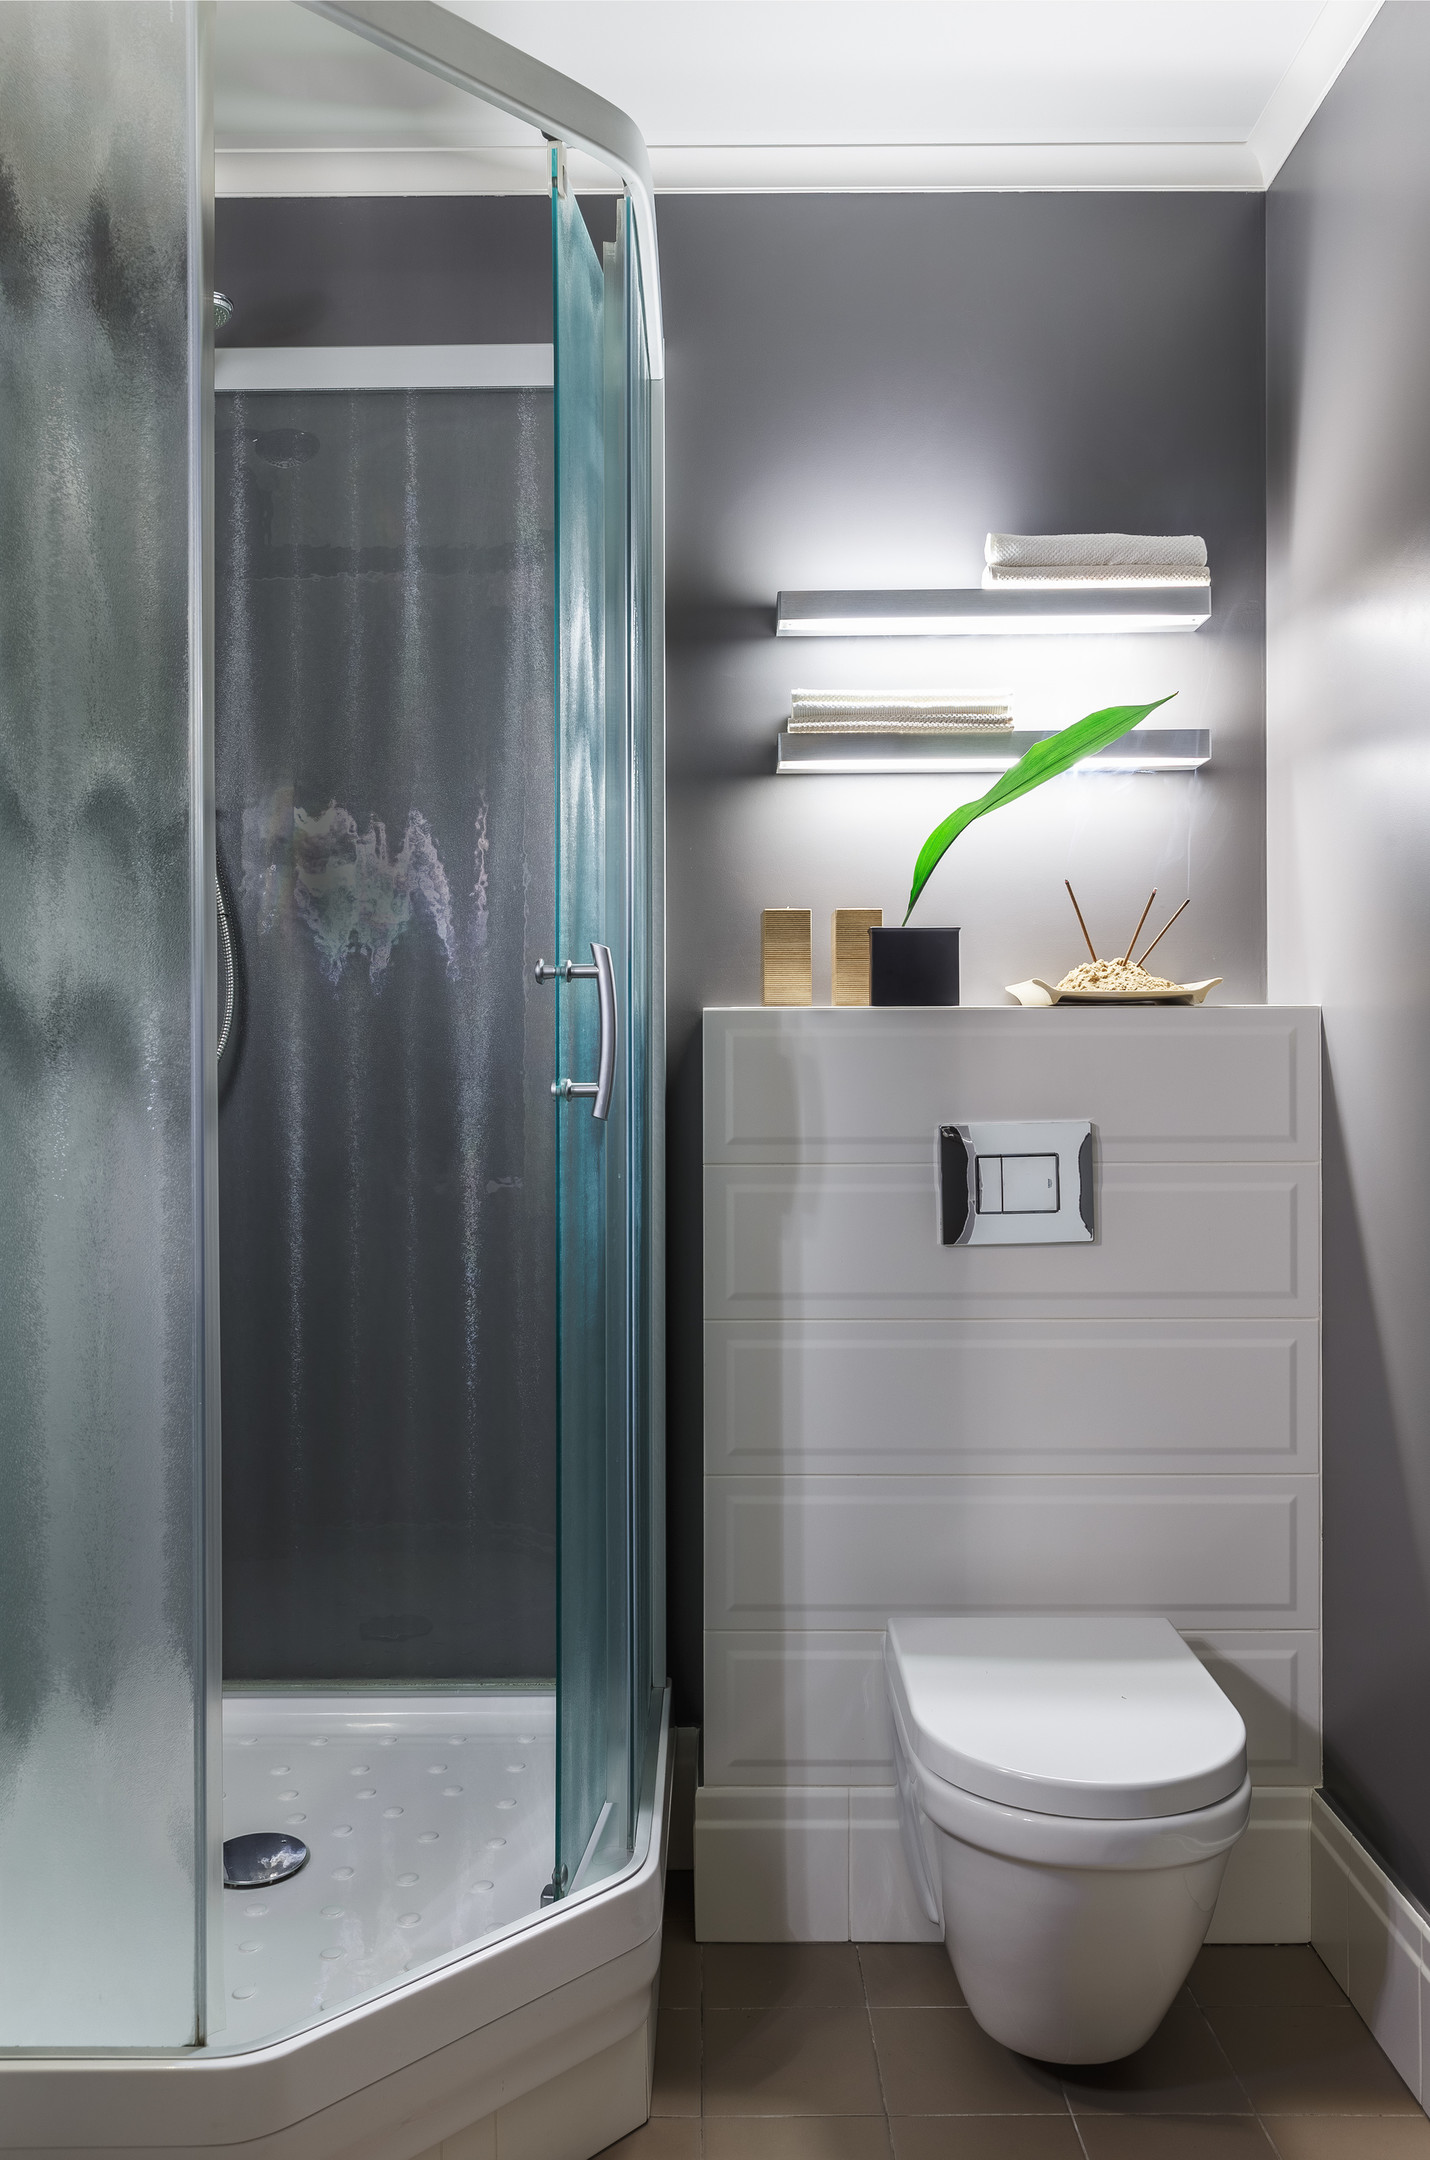 Phòng tắm và nhà vệ sinh thiết kế trong cùng một không gian, với gạch lát sàn tương đồng với khu vực logia. Buồng tắm nâng sàn với cửa kính trượt màu xanh ngọc lam tươi mát.